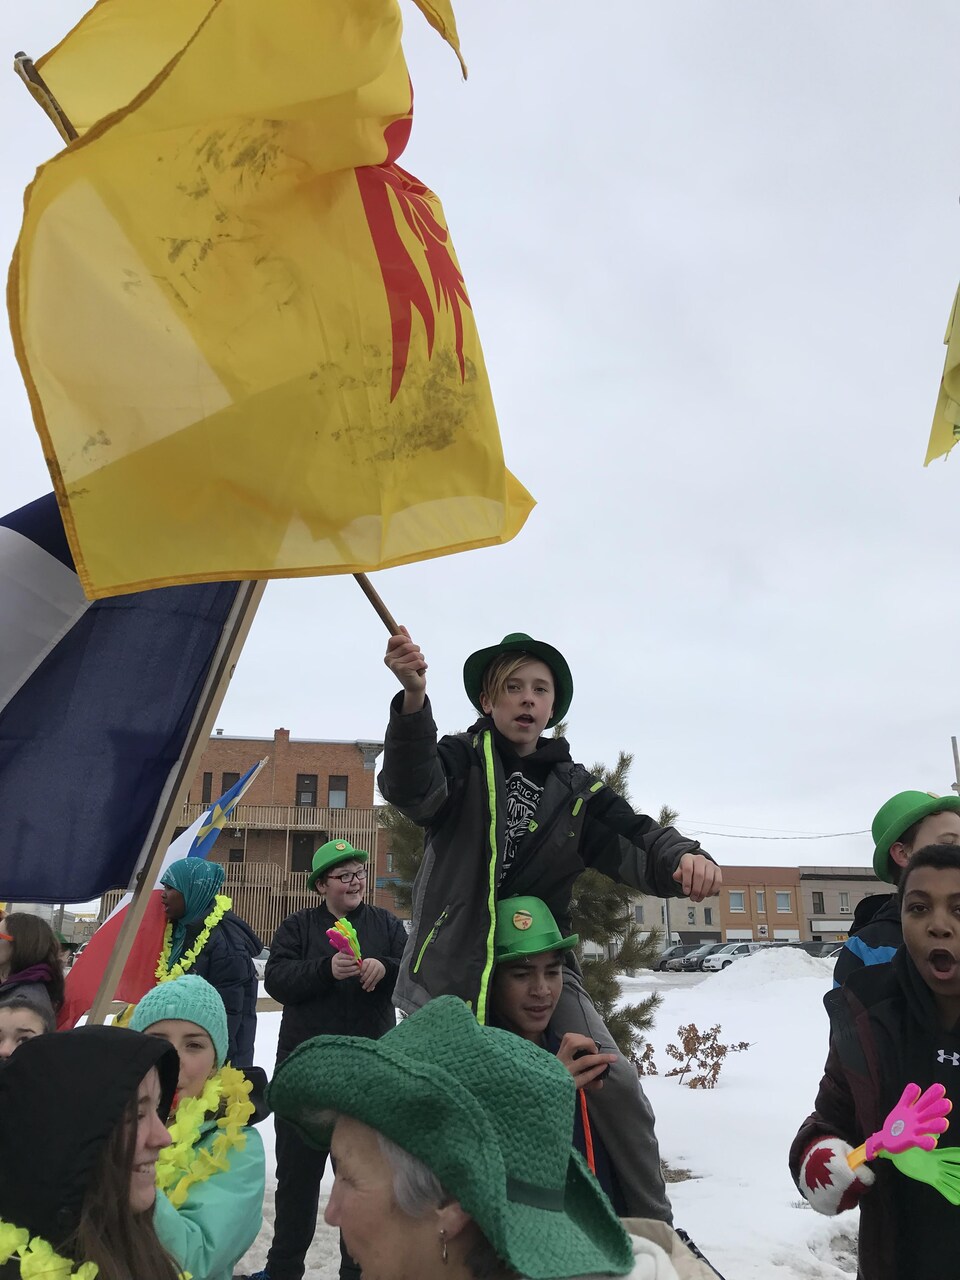 Un garçon brandit le drapeau fransaskois lors du défilé.